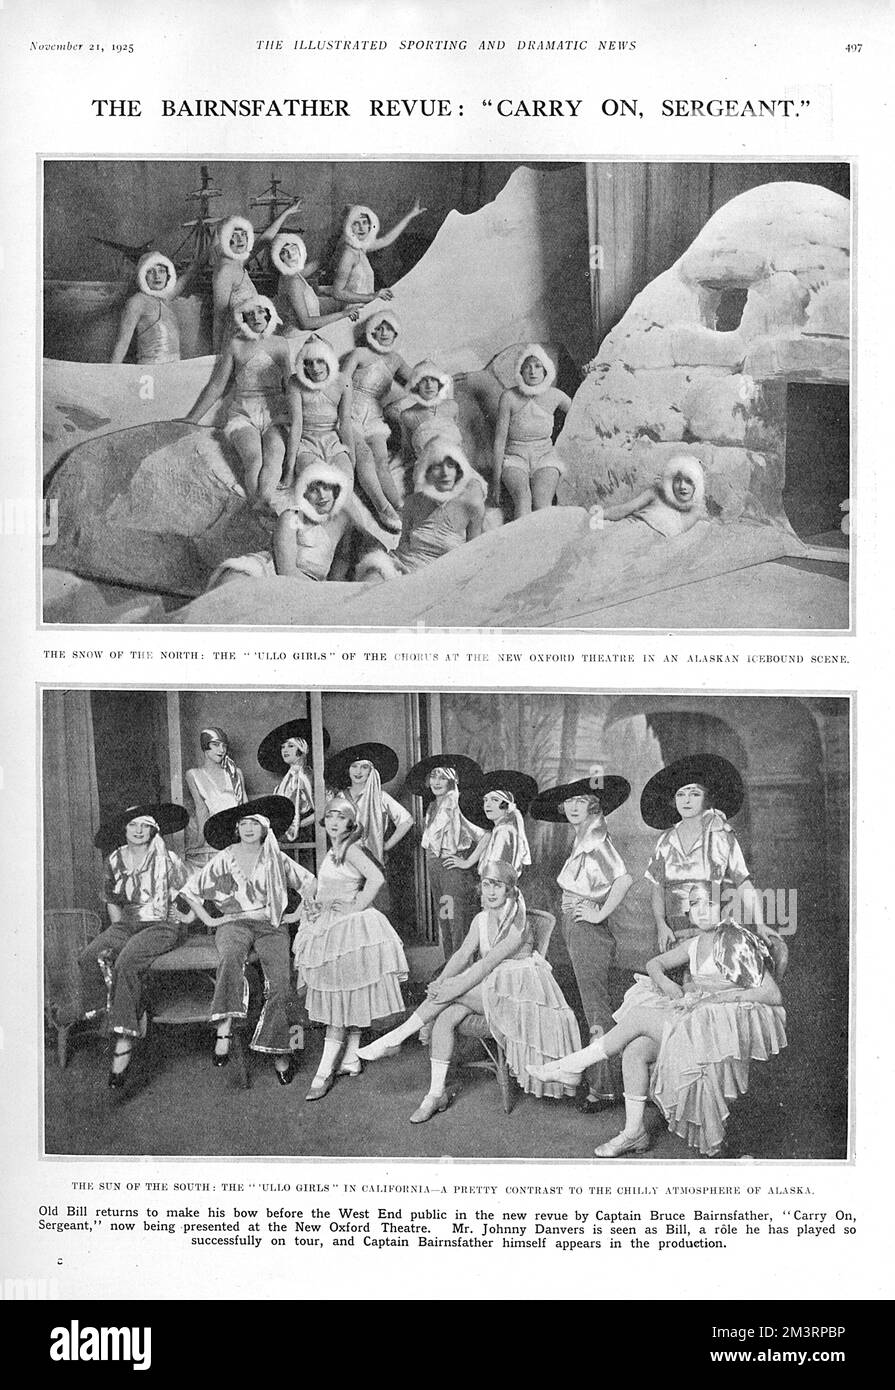 Membri del cast di "Carry on, Sergeant", una popolare rivisita del Capitano Bruce Bairnsfather al New Oxford Theatre. 1925 Foto Stock